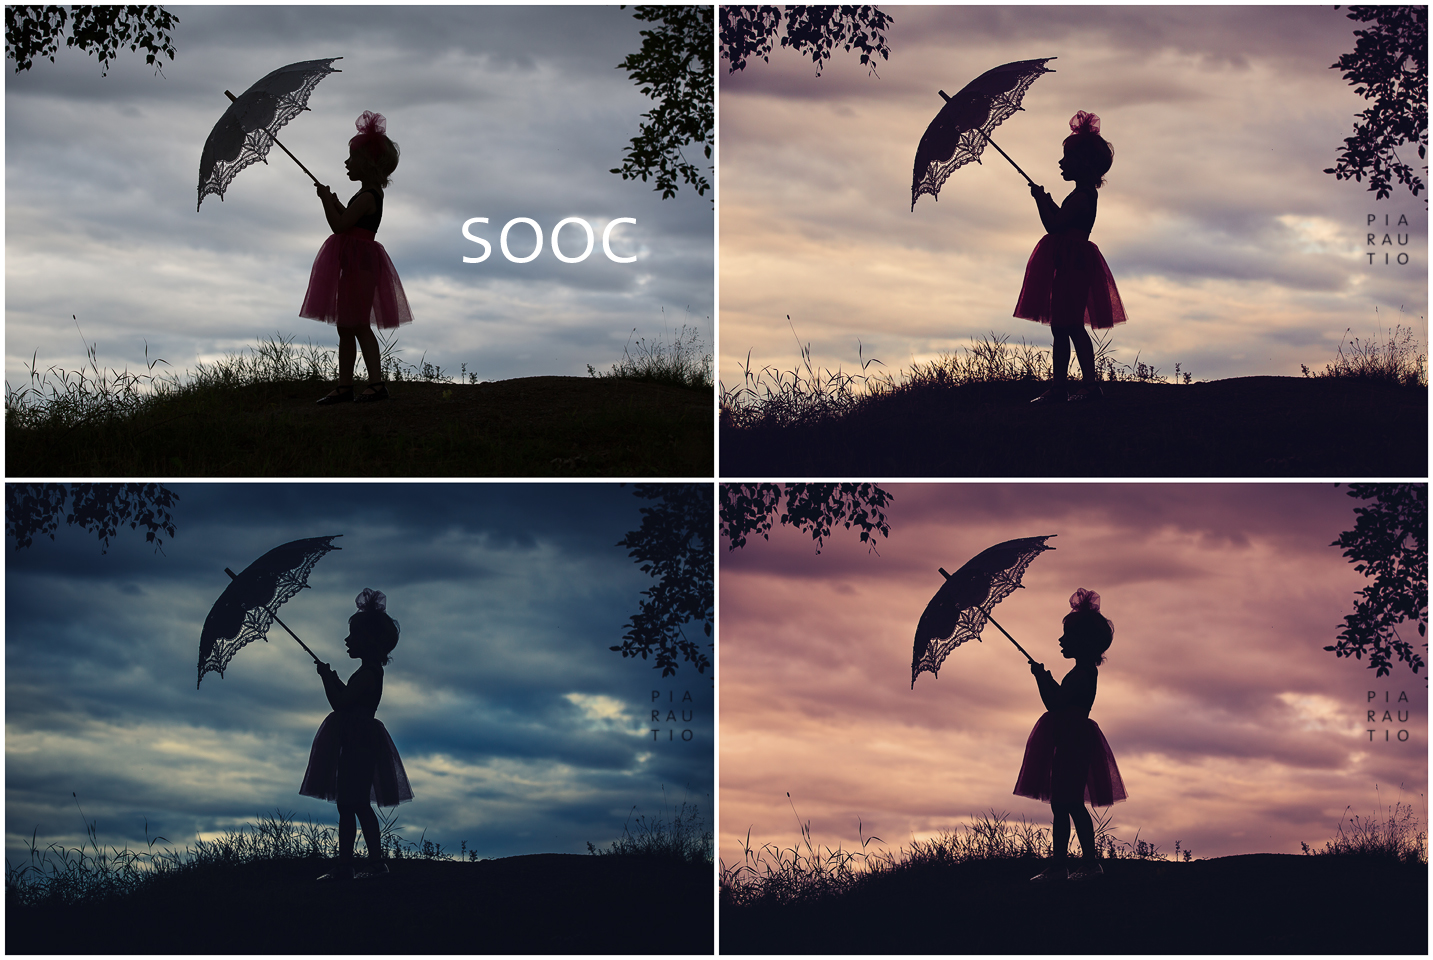 pia_sooc_3edits_parasol Kako urediti super slatke siluetne fotografije Nacrti Lightroom unaprijed postavljene Photoshop akcije